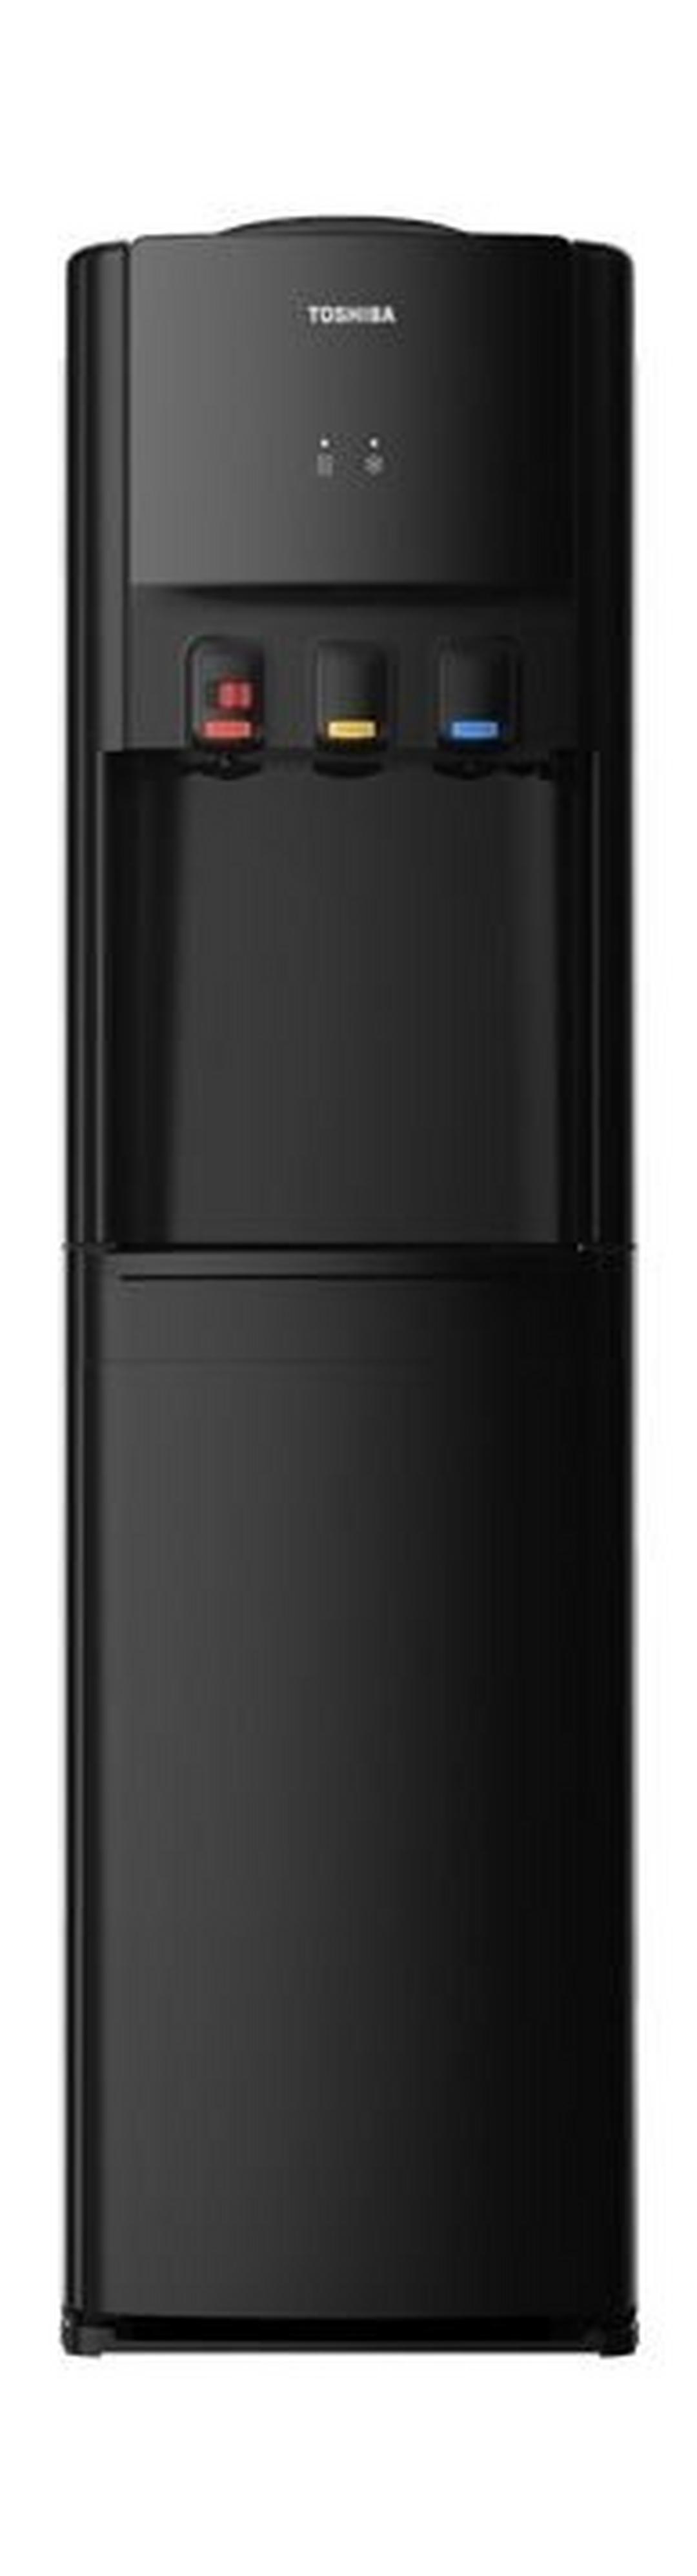 Toshiba Floor Standing Water Dispenser (YL1766S-K) - Black